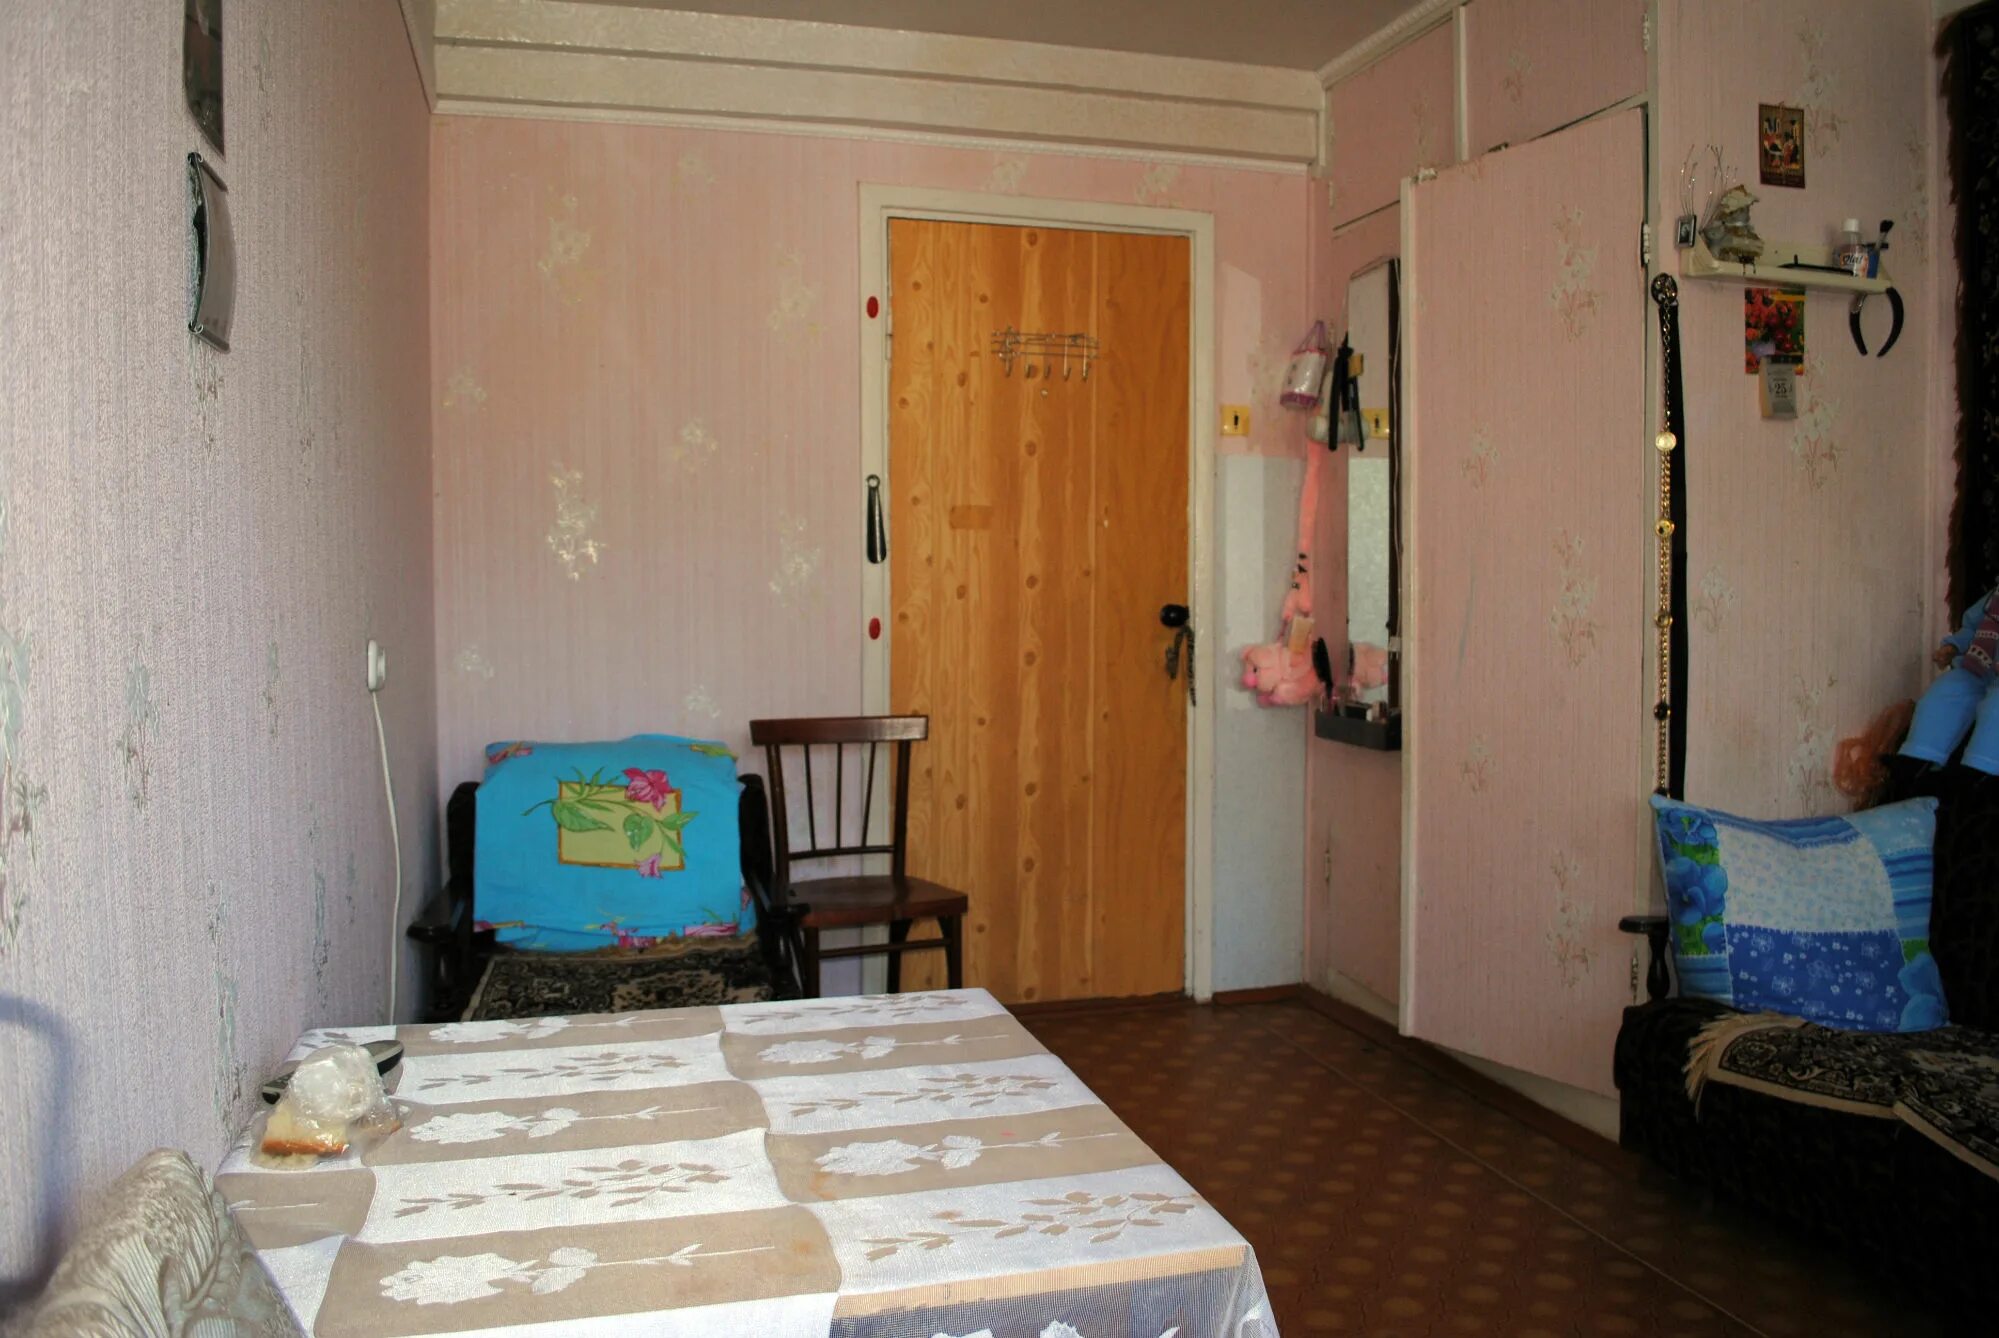 Комната в общежитии. Комната в общежитии без ремонта. Старая комната в общежитии. Комната в общаге без ремонта.